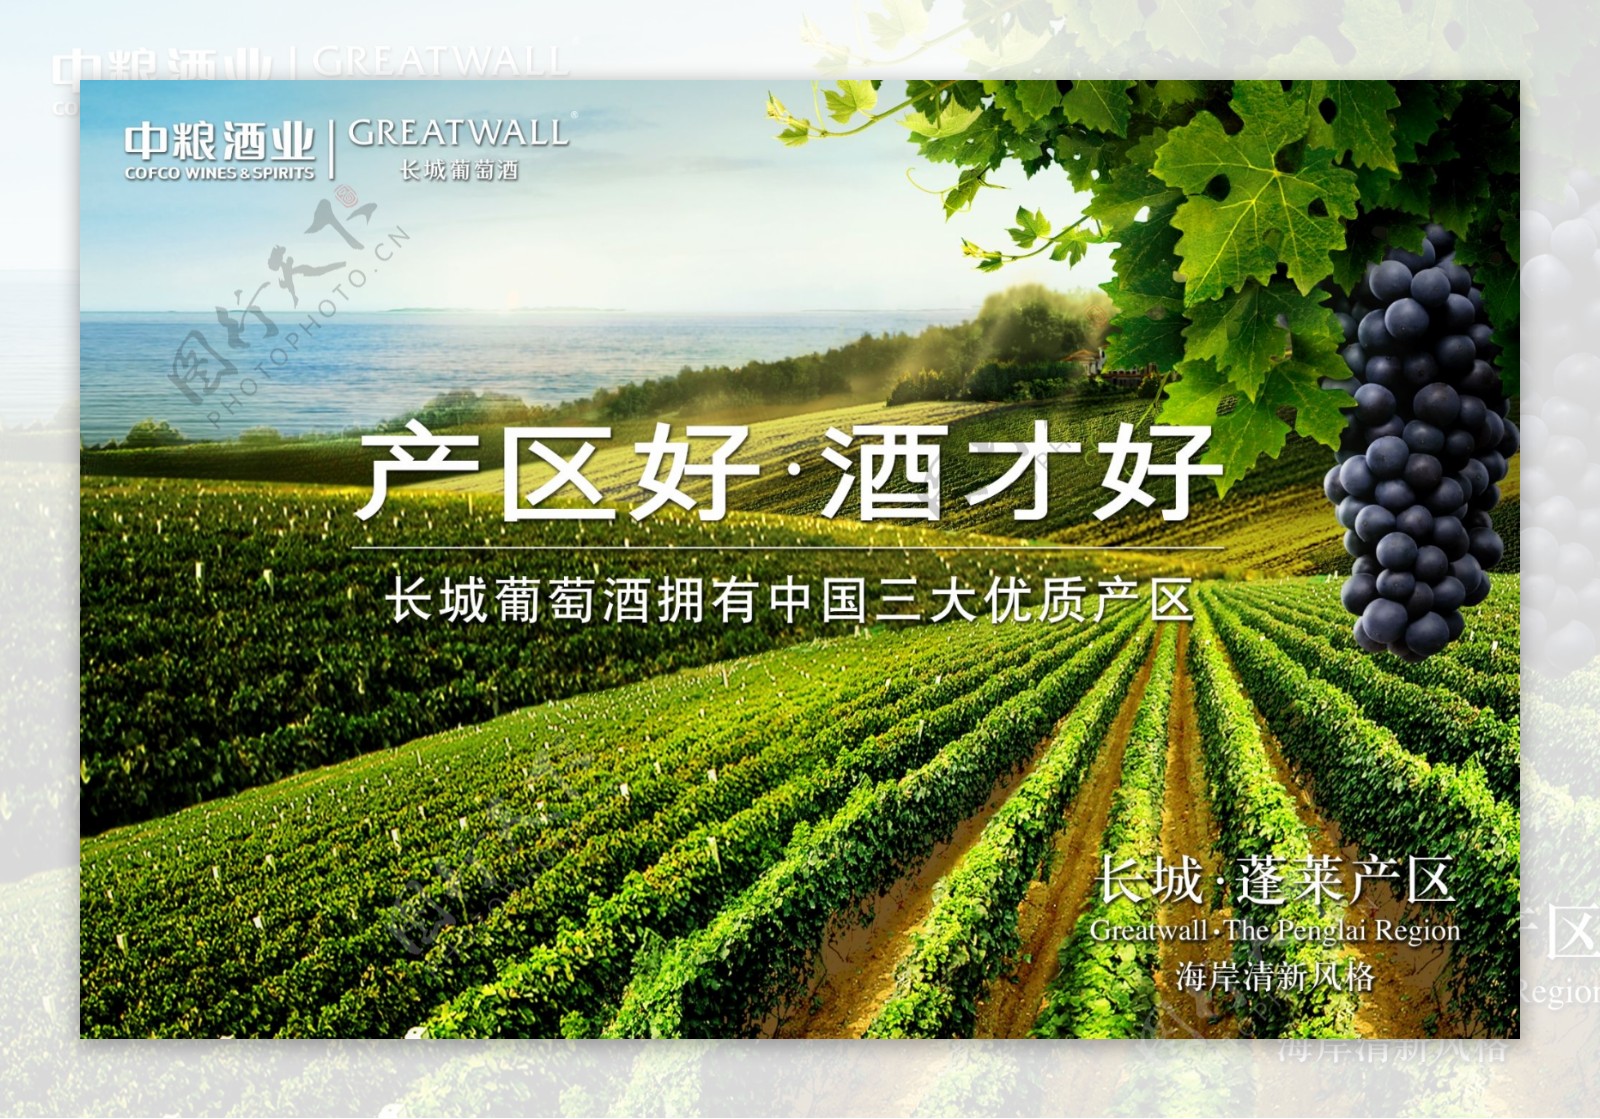 长城葡萄酒蓬莱产区海报图片